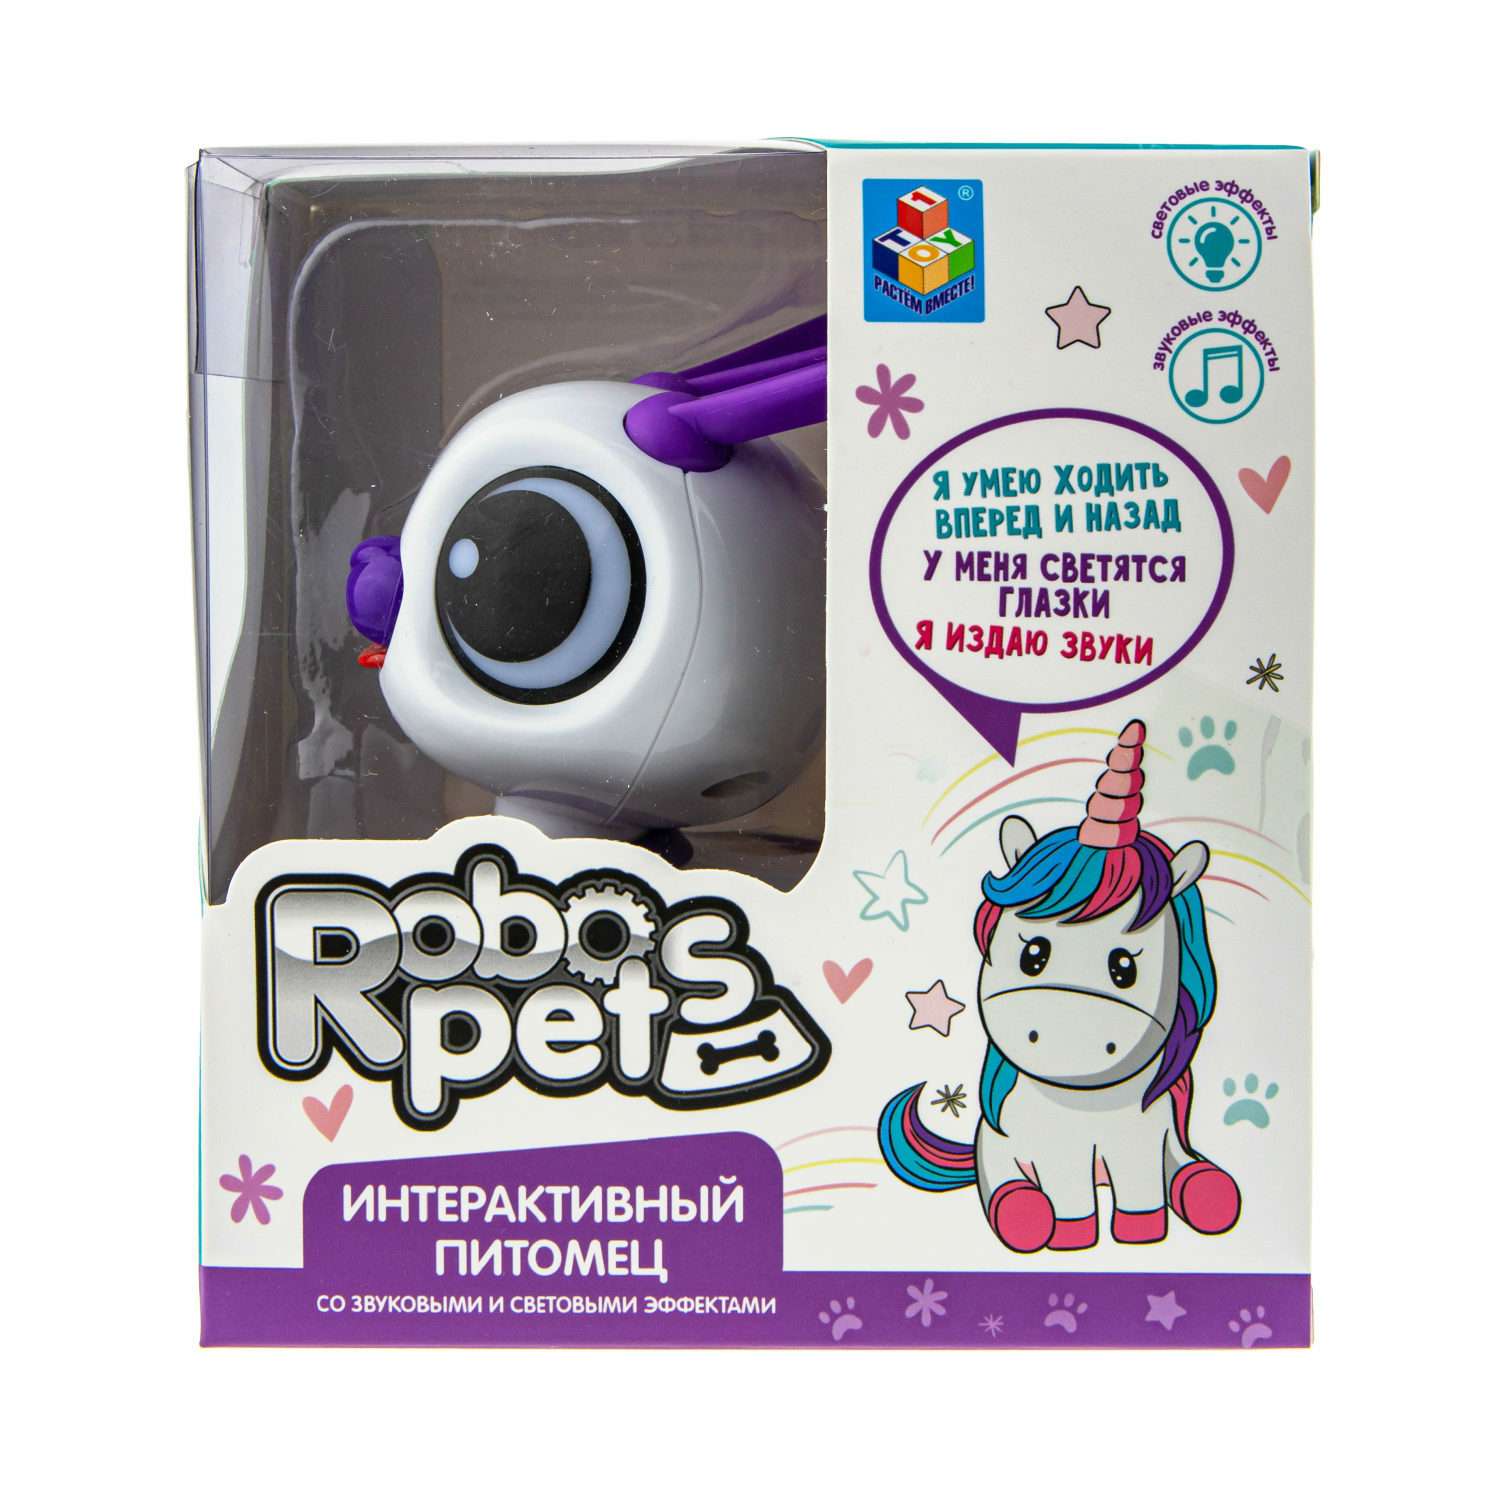 Интерактивная игрушка Robo Pets Кролик бело- фиолетовый со звуковыми световыми и эффектами движения - фото 4